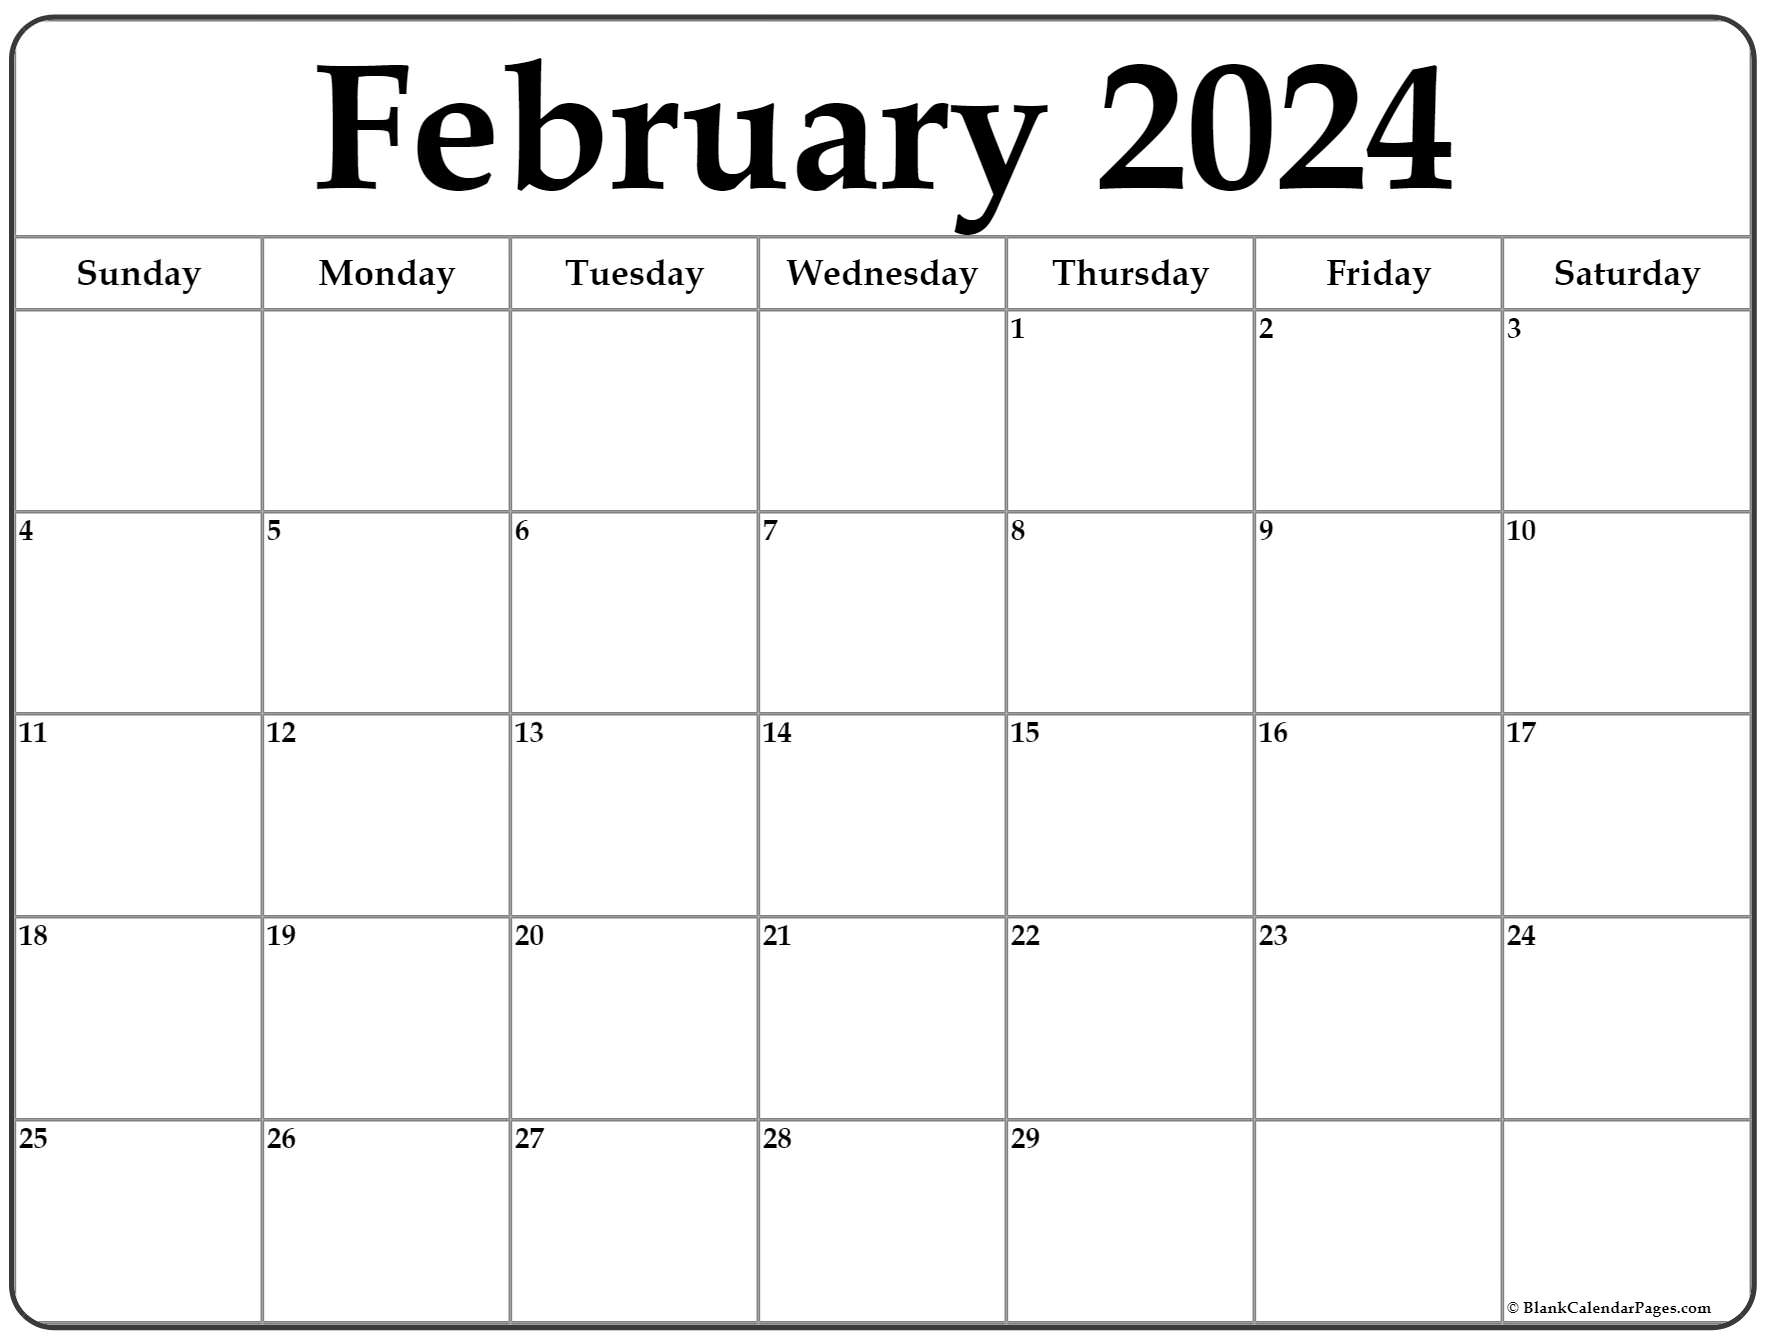 February 2024 Calendar | Free Printable Calendar for Calendar Feb 2024 Printable Free